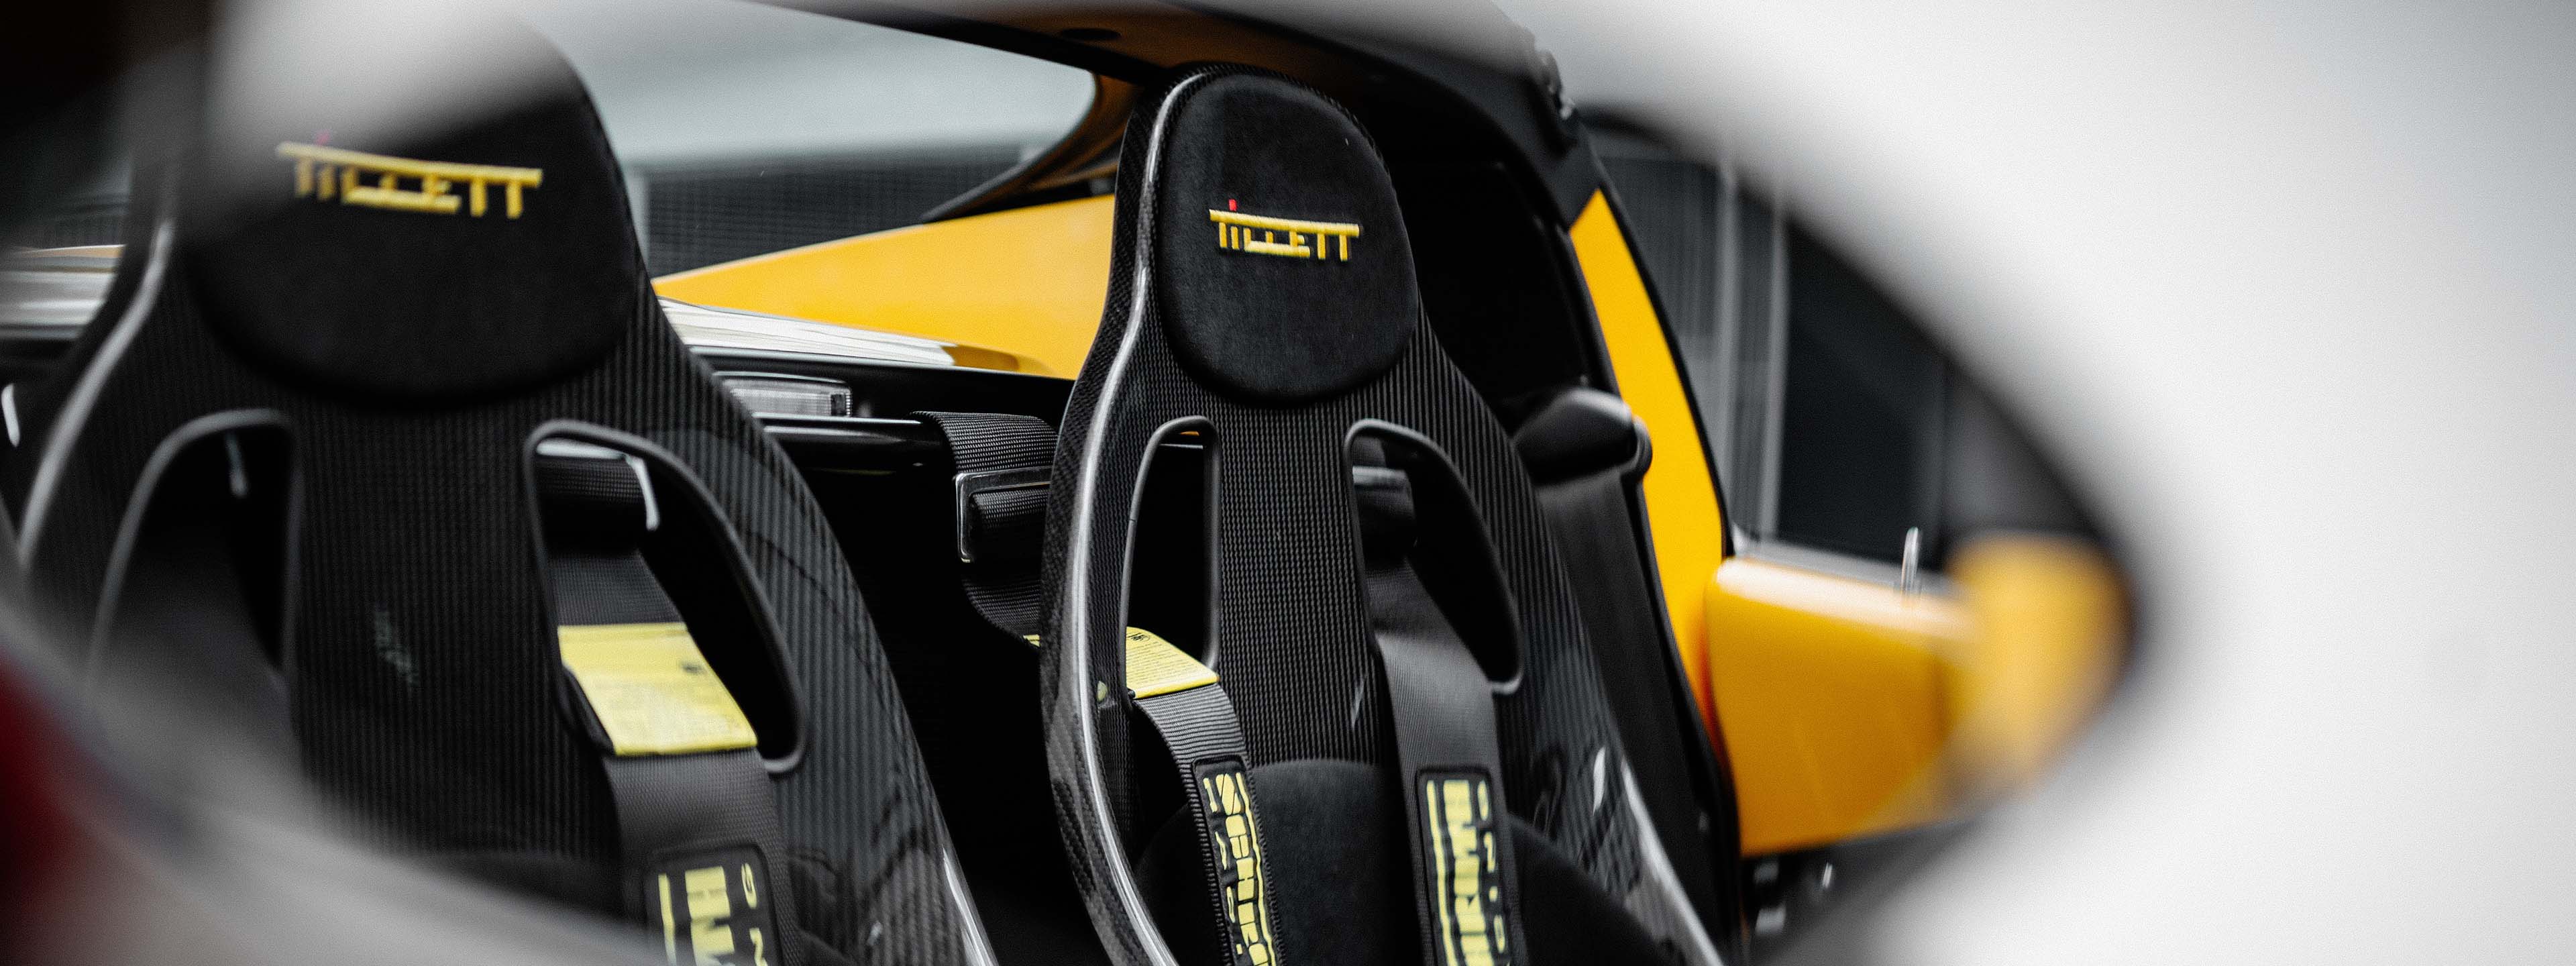 Tillet Seats in a Lotus Elise Series 3 - Foto: Rob Spoel